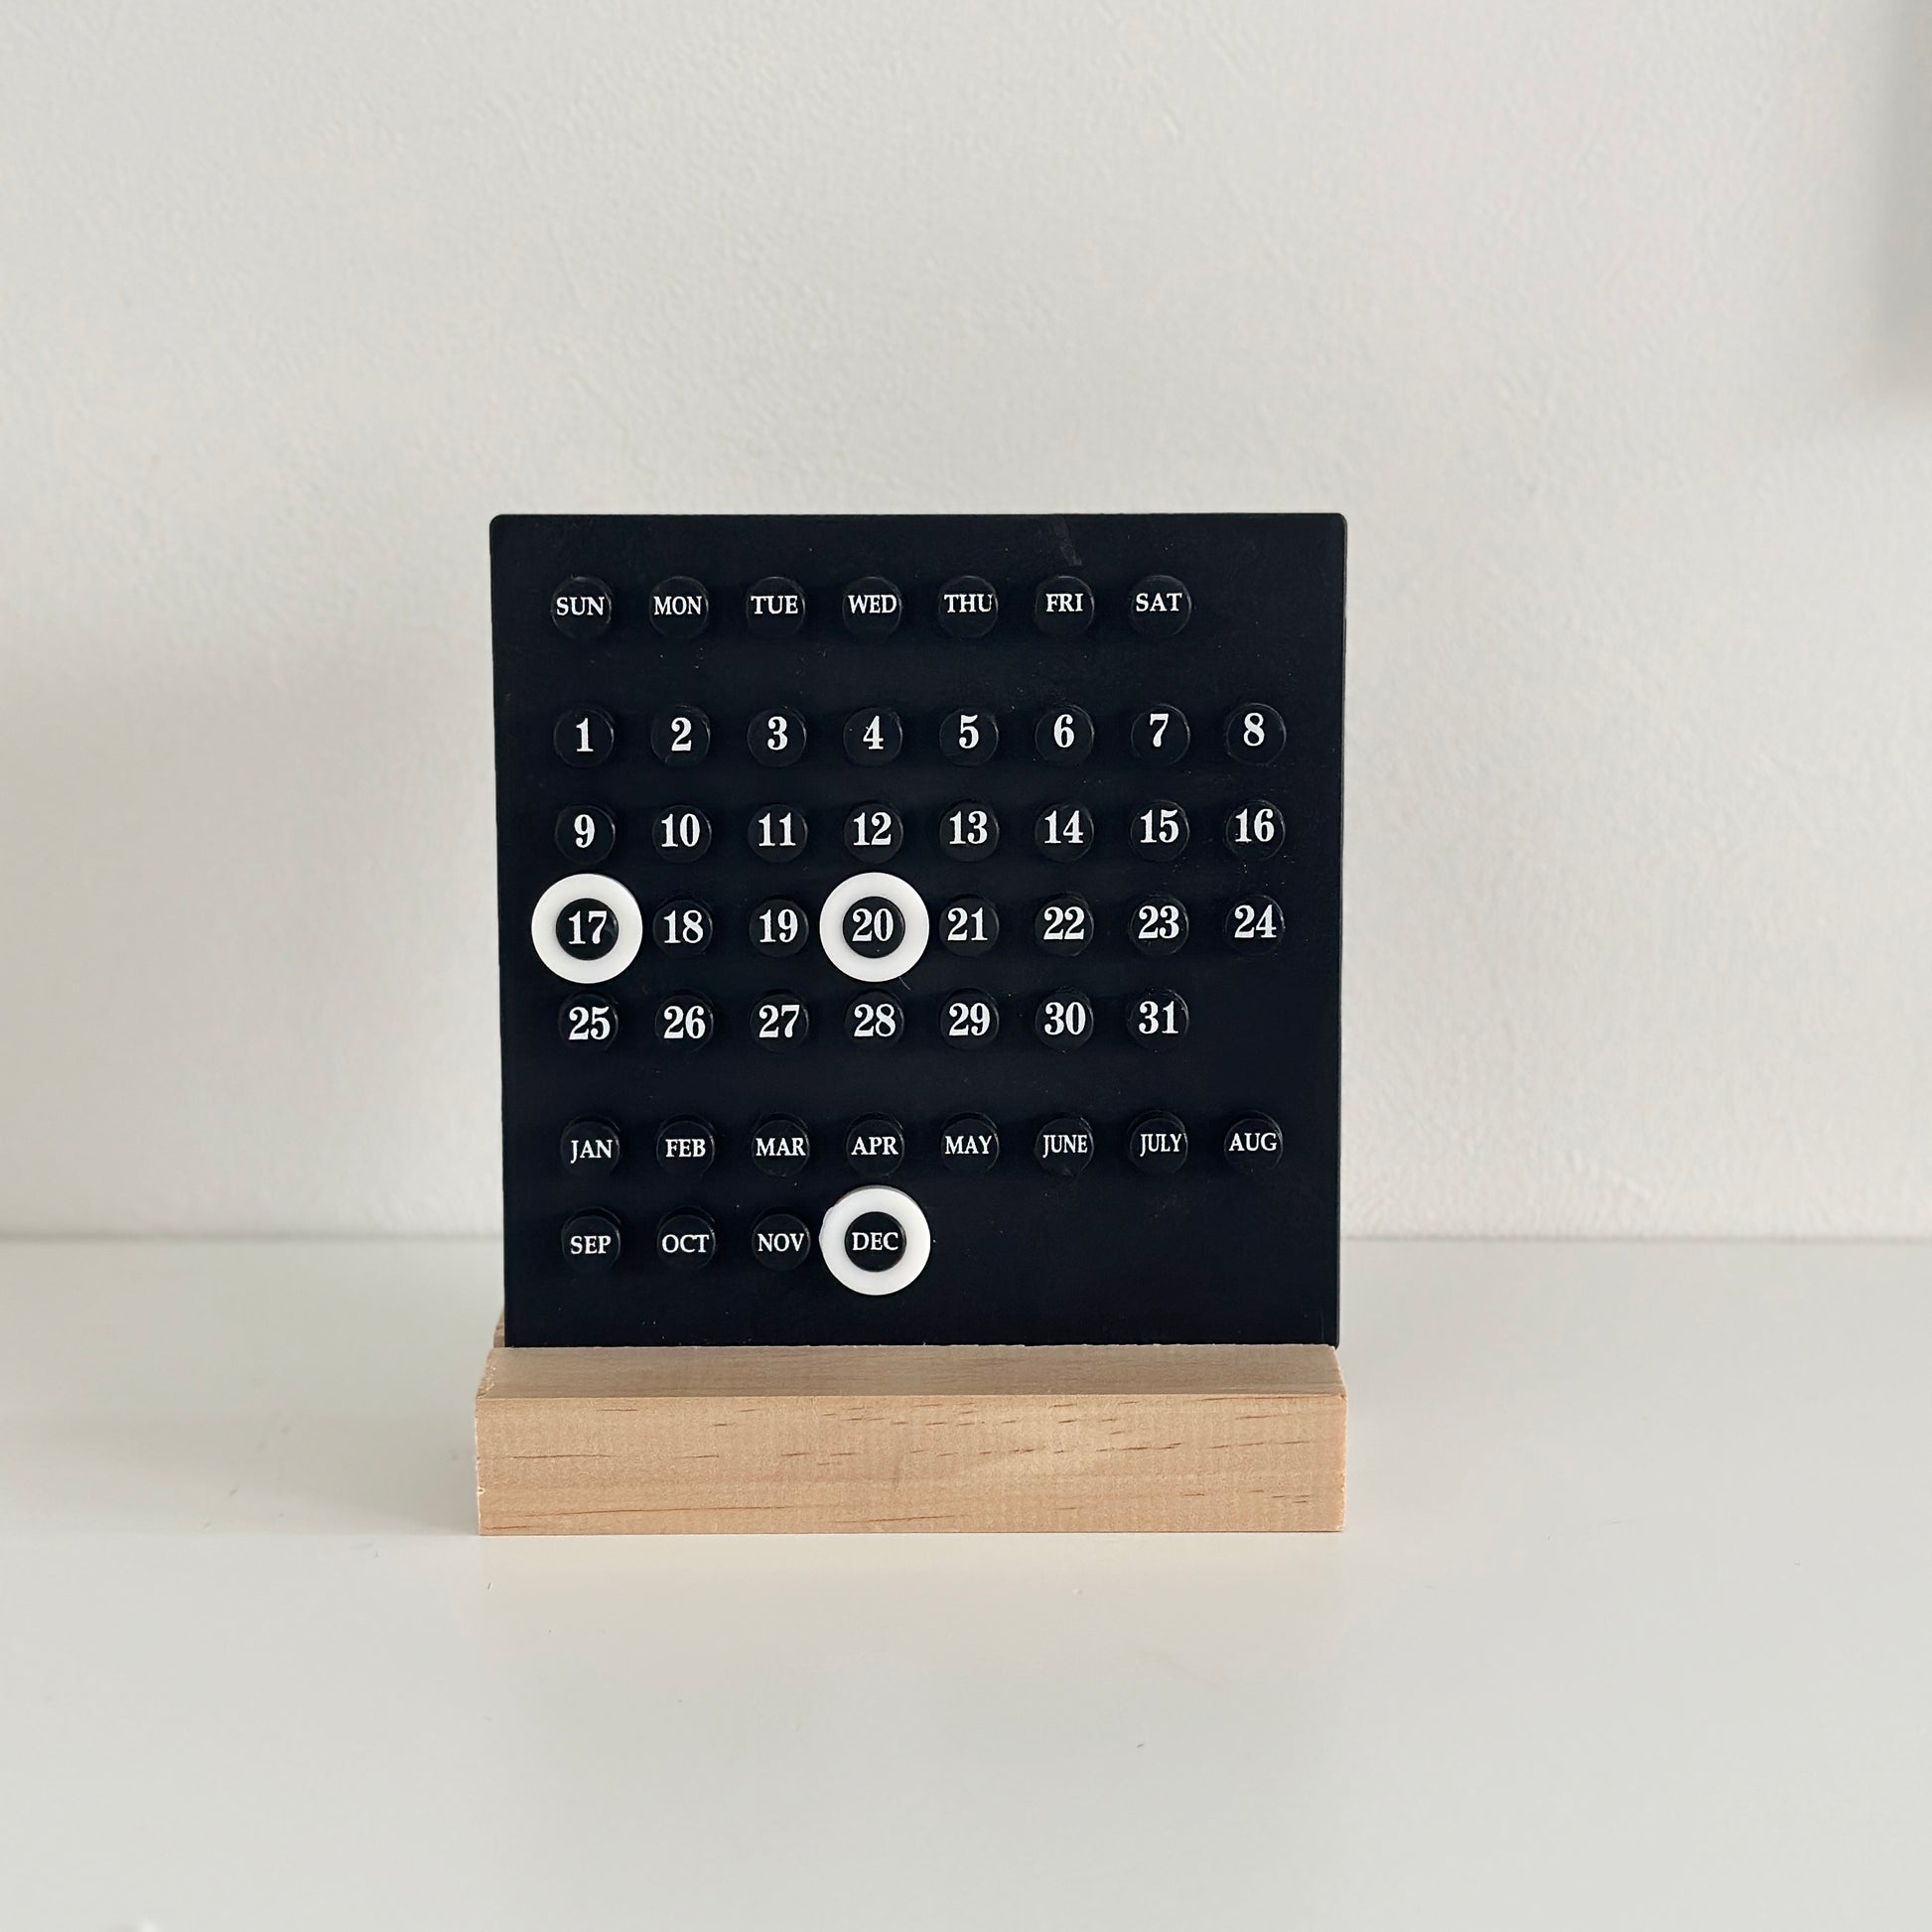 土台が木でできたブラックのプラスチック製卓上カレンダー